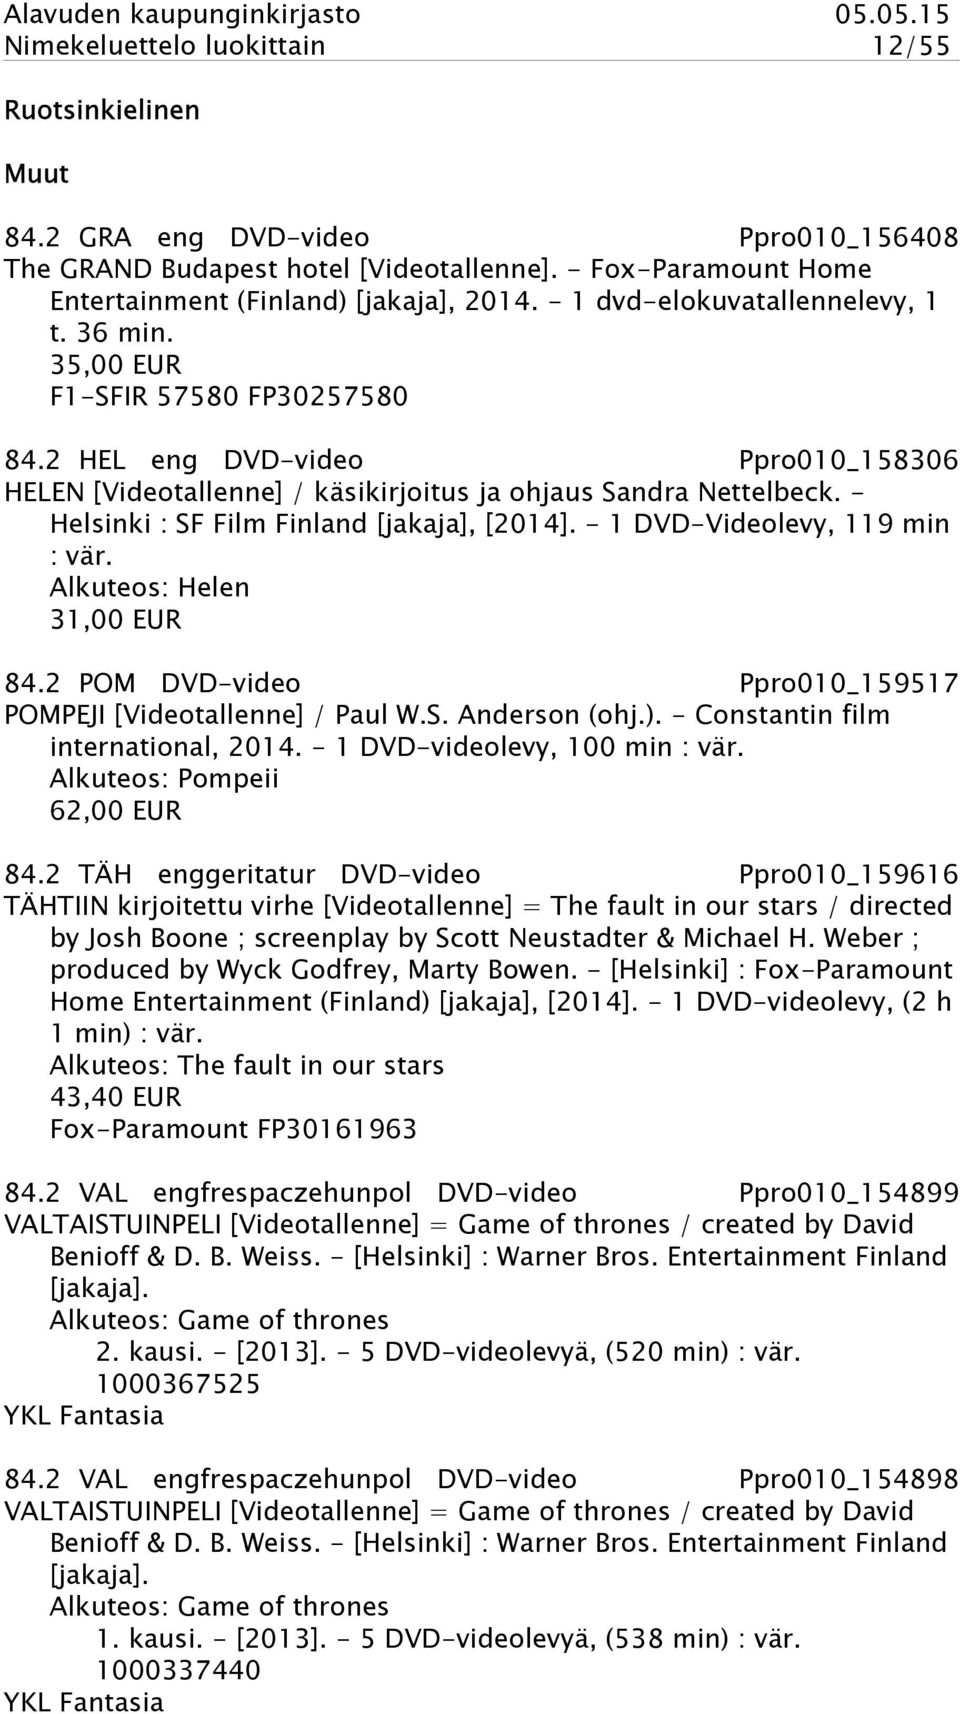 - Helsinki : SF Film Finland [jakaja], [2014]. - 1 DVD-Videolevy, 119 min : vär. Alkuteos: Helen 31,00 EUR 84.2 POM DVD-video Ppro010_159517 POMPEJI [Videotallenne] / Paul W.S. Anderson (ohj.).